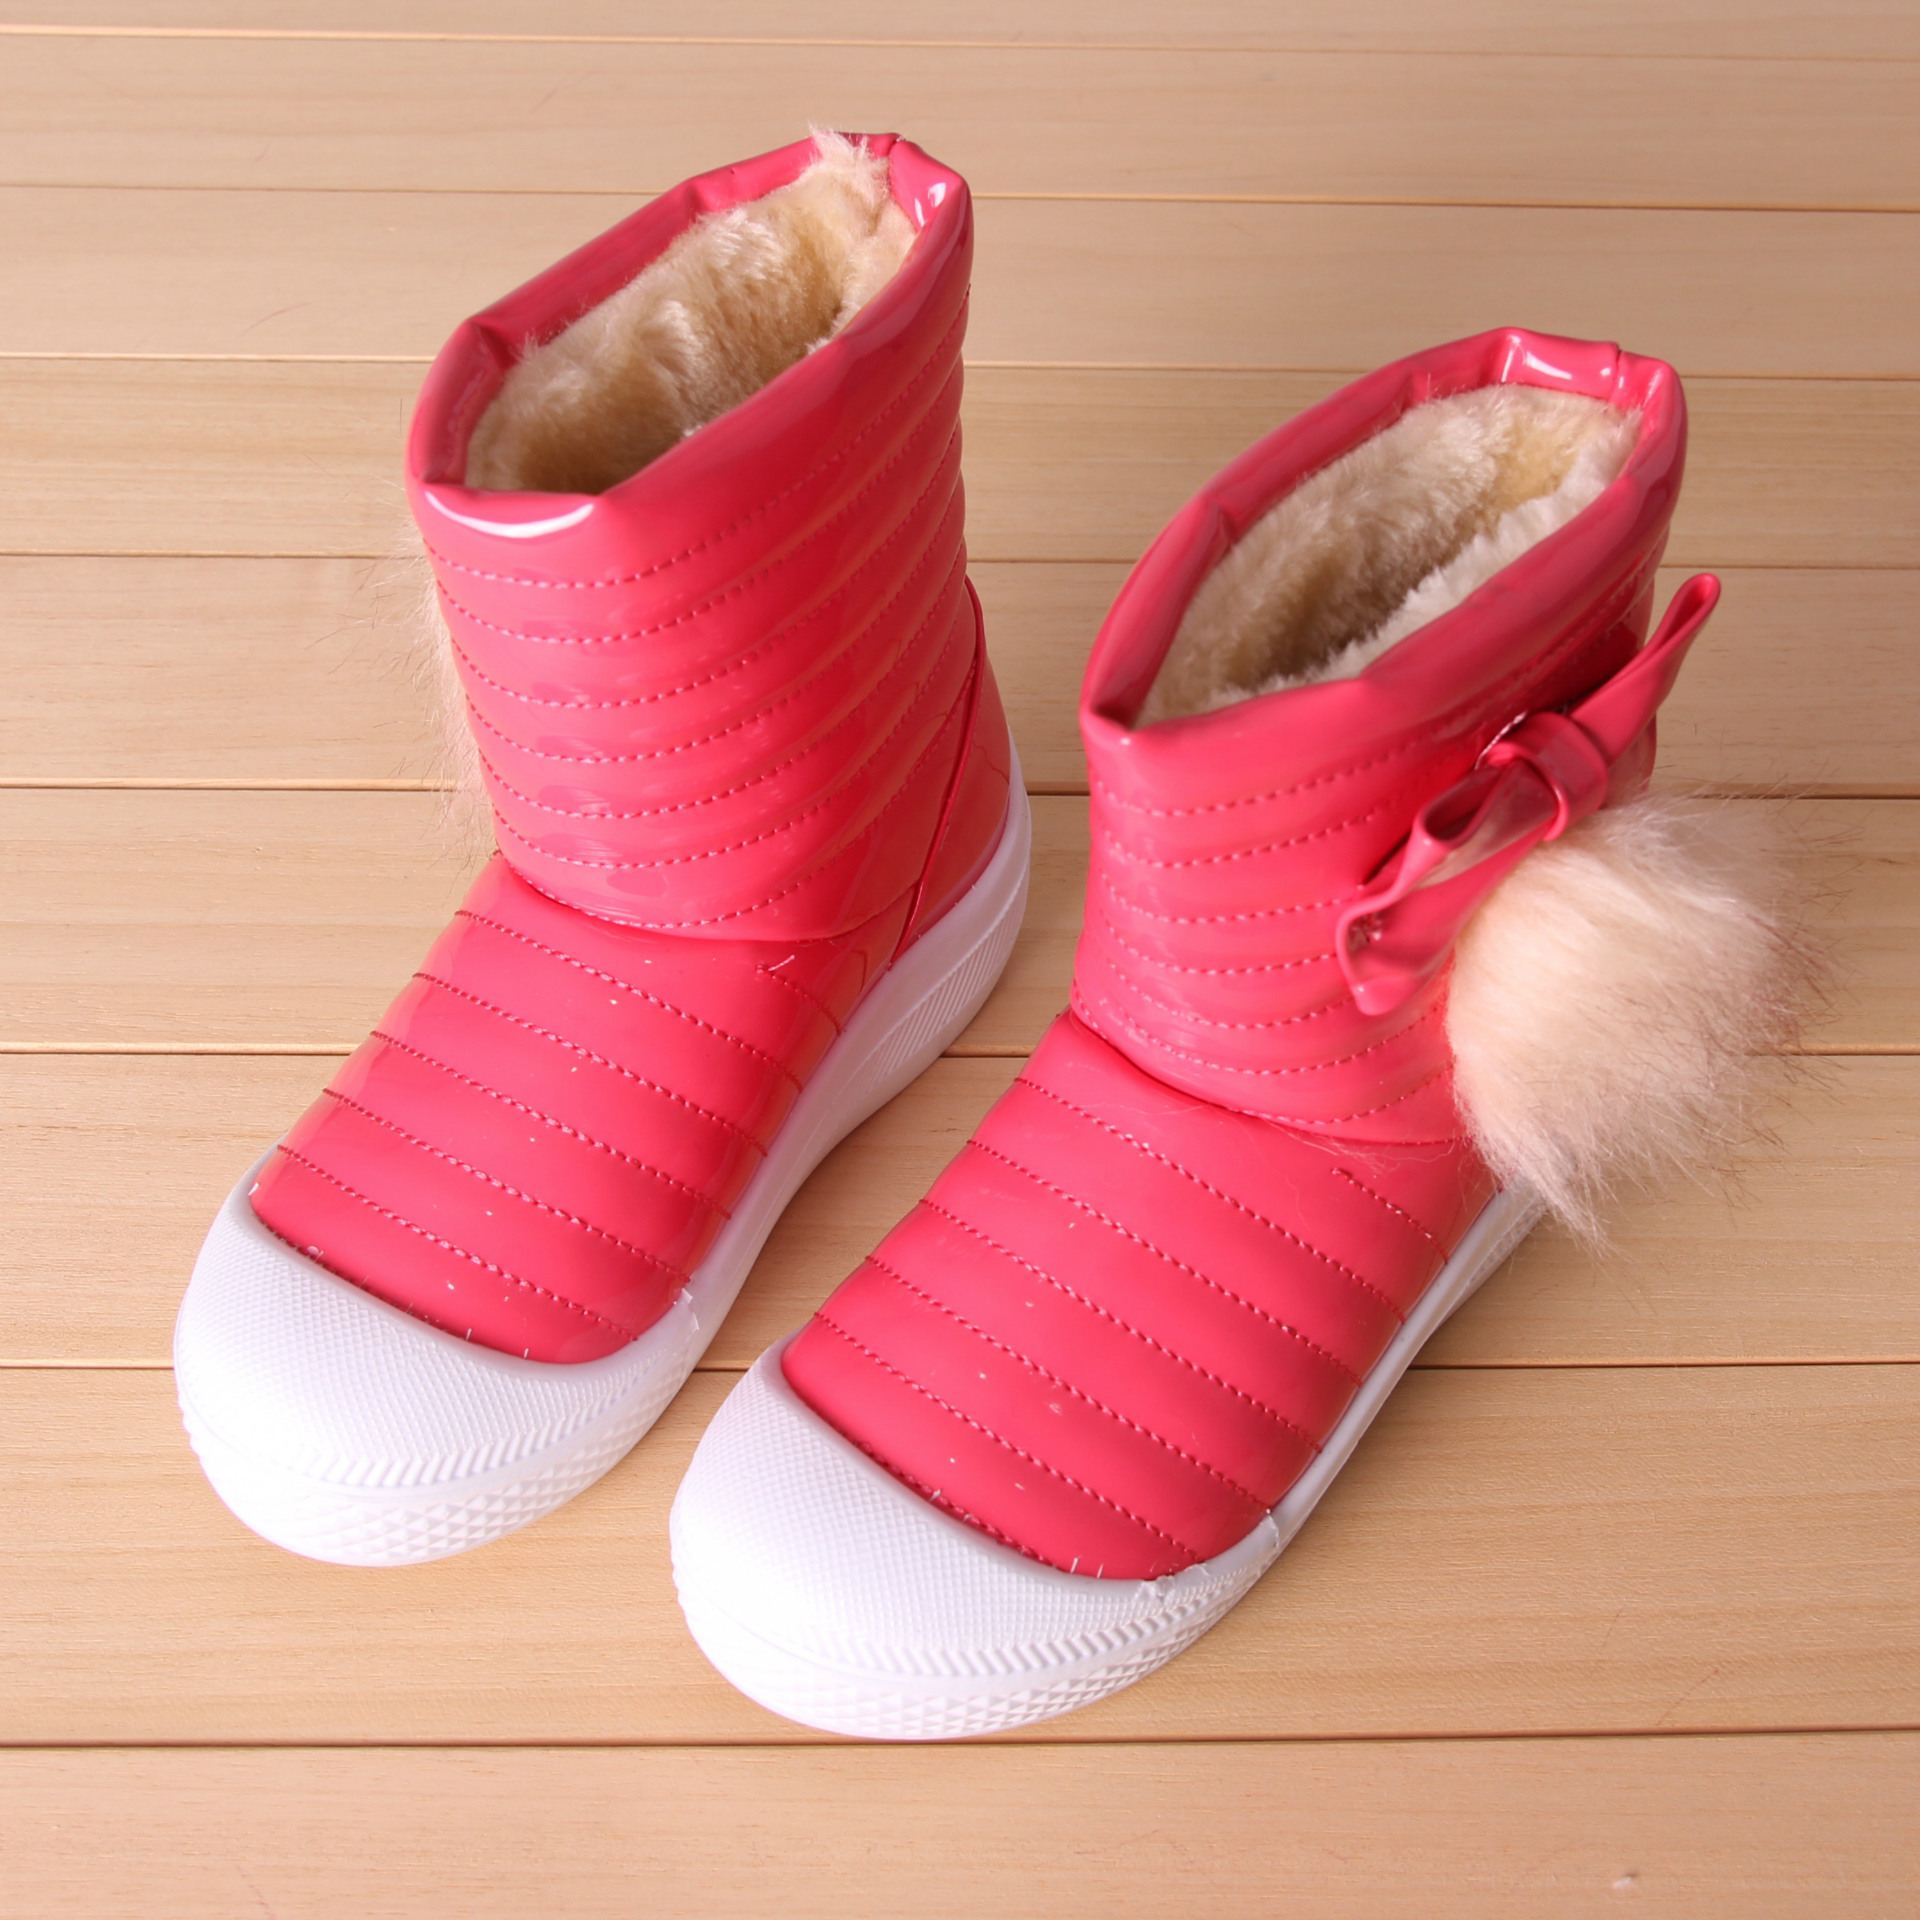 2013年冬季新款儿童雪地靴 蝴蝶结漆皮亮皮糖果色童靴童鞋批发